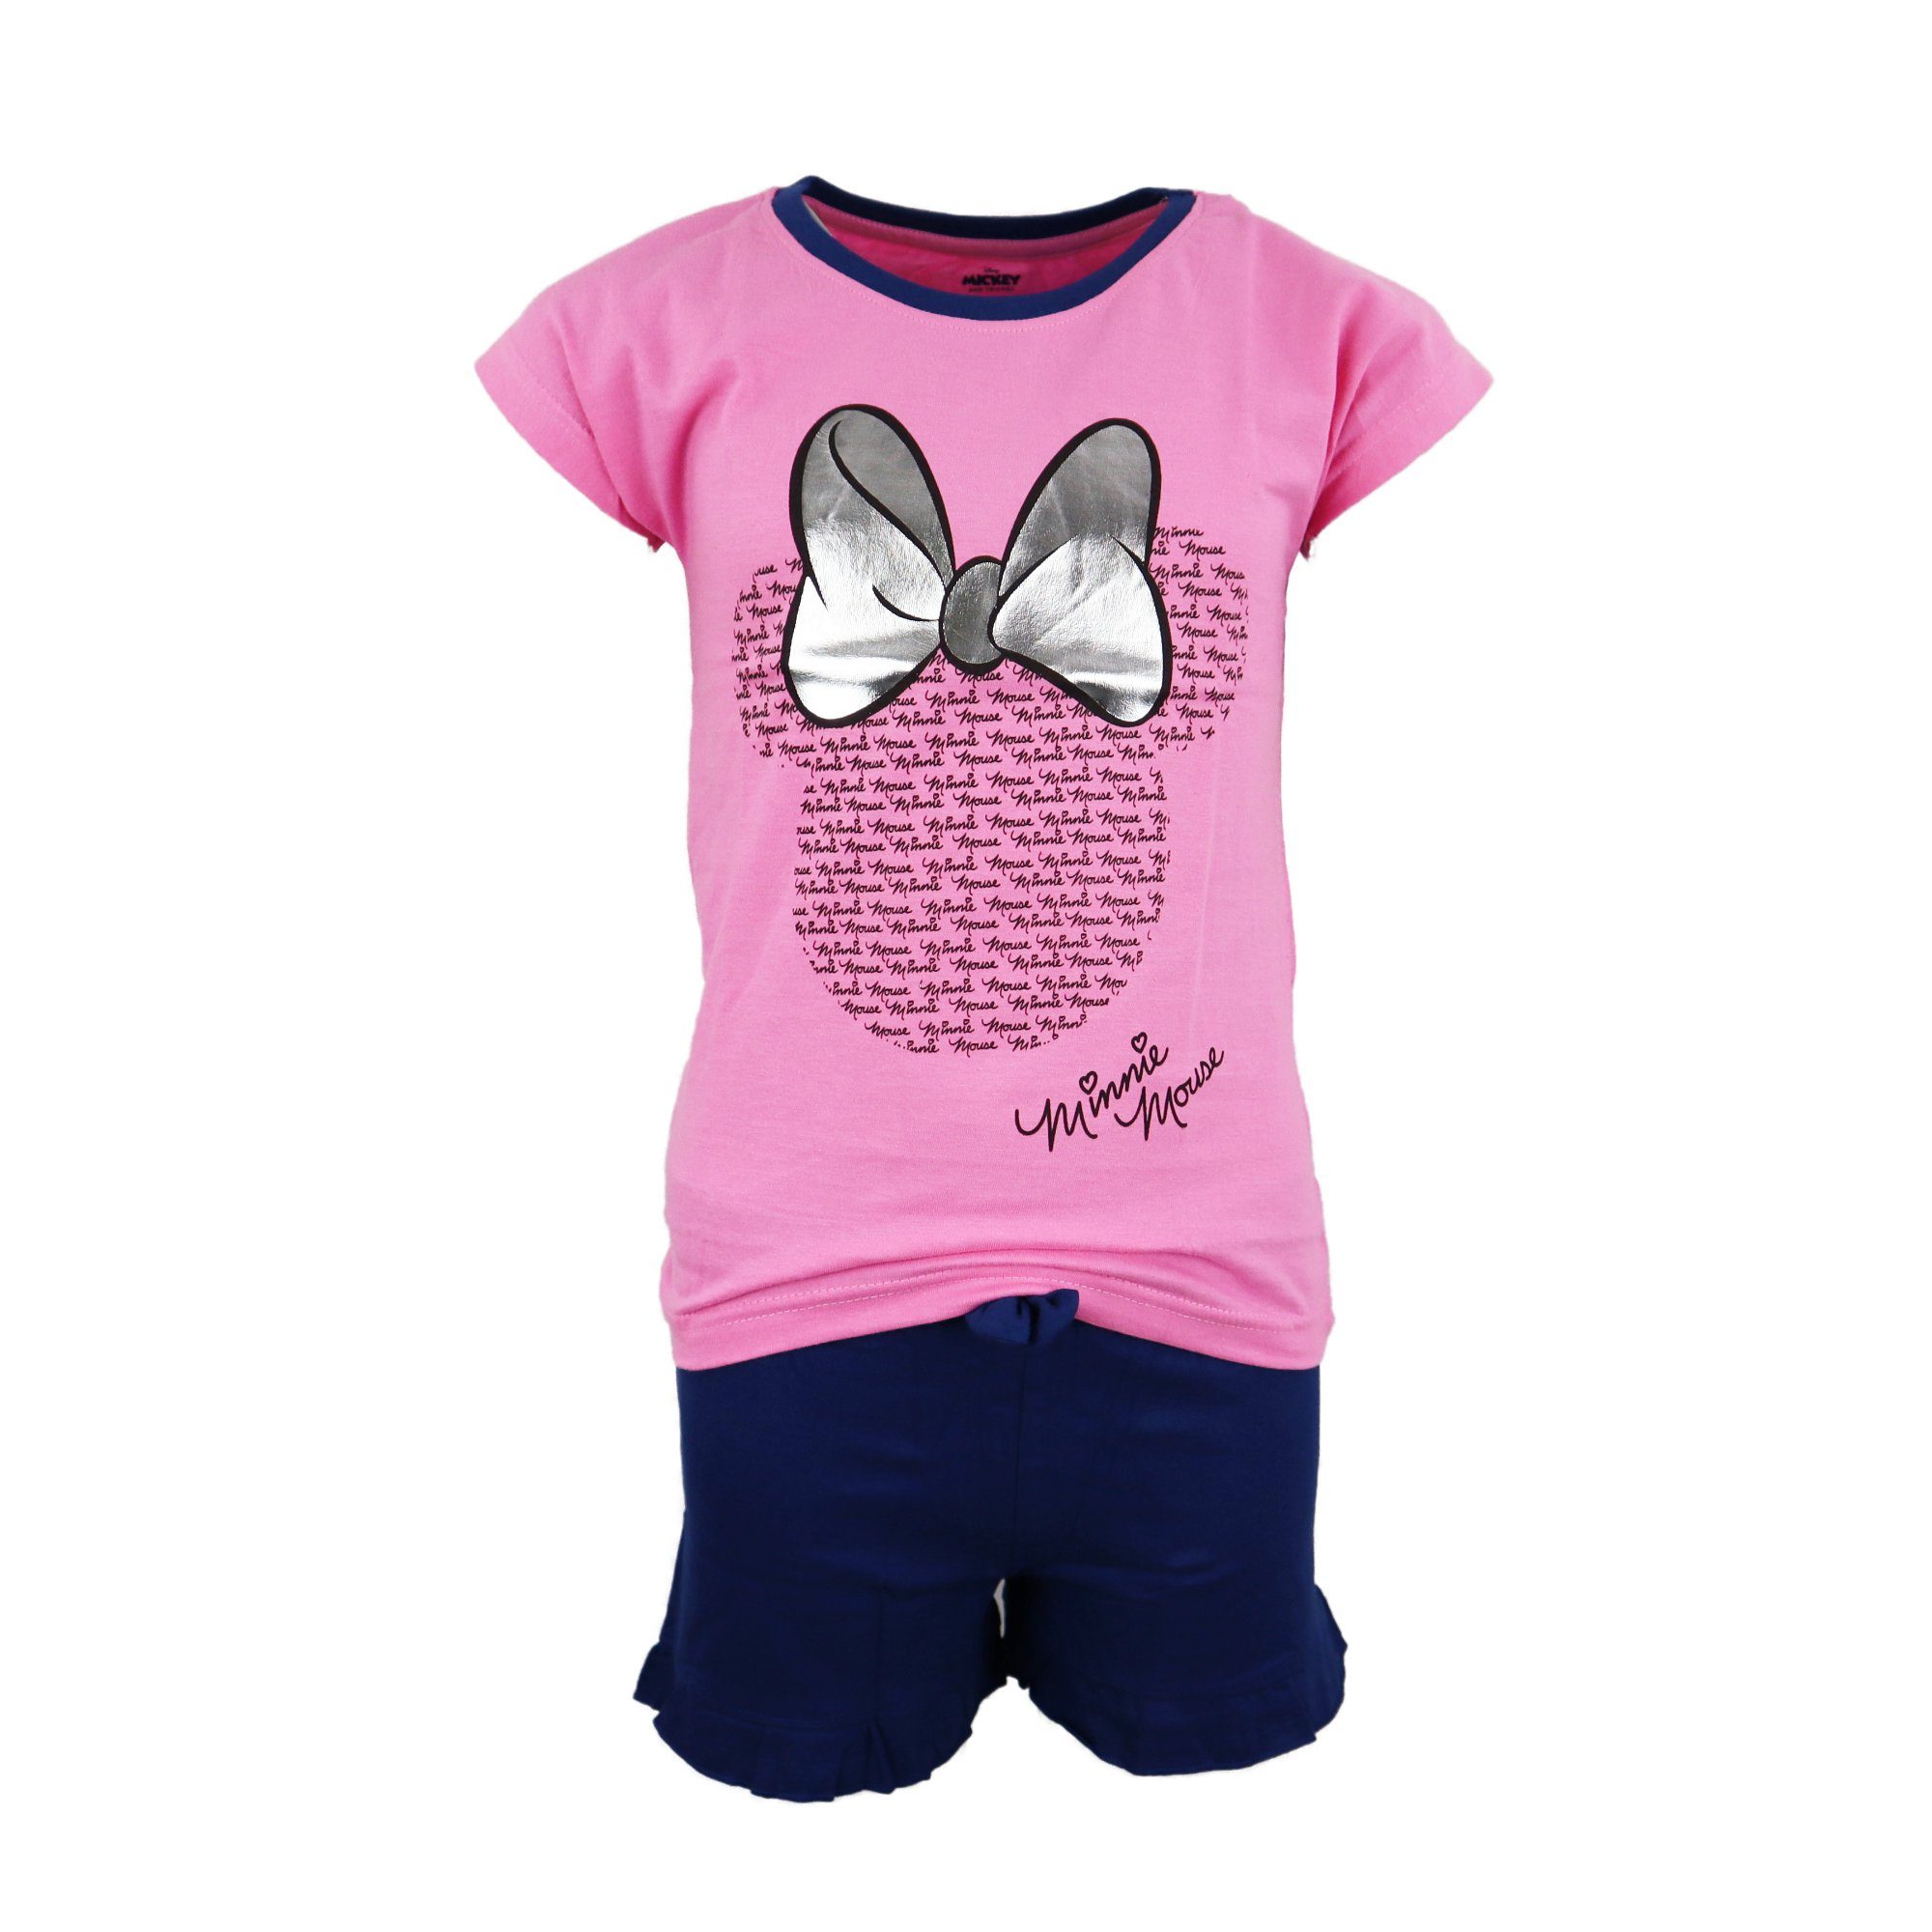 Disney Minnie Mouse Schlafanzug Mädchen Baumwolle Pyjama Rosa 164, 100% Jugend Kinder Gr. kurzarm 134 bis